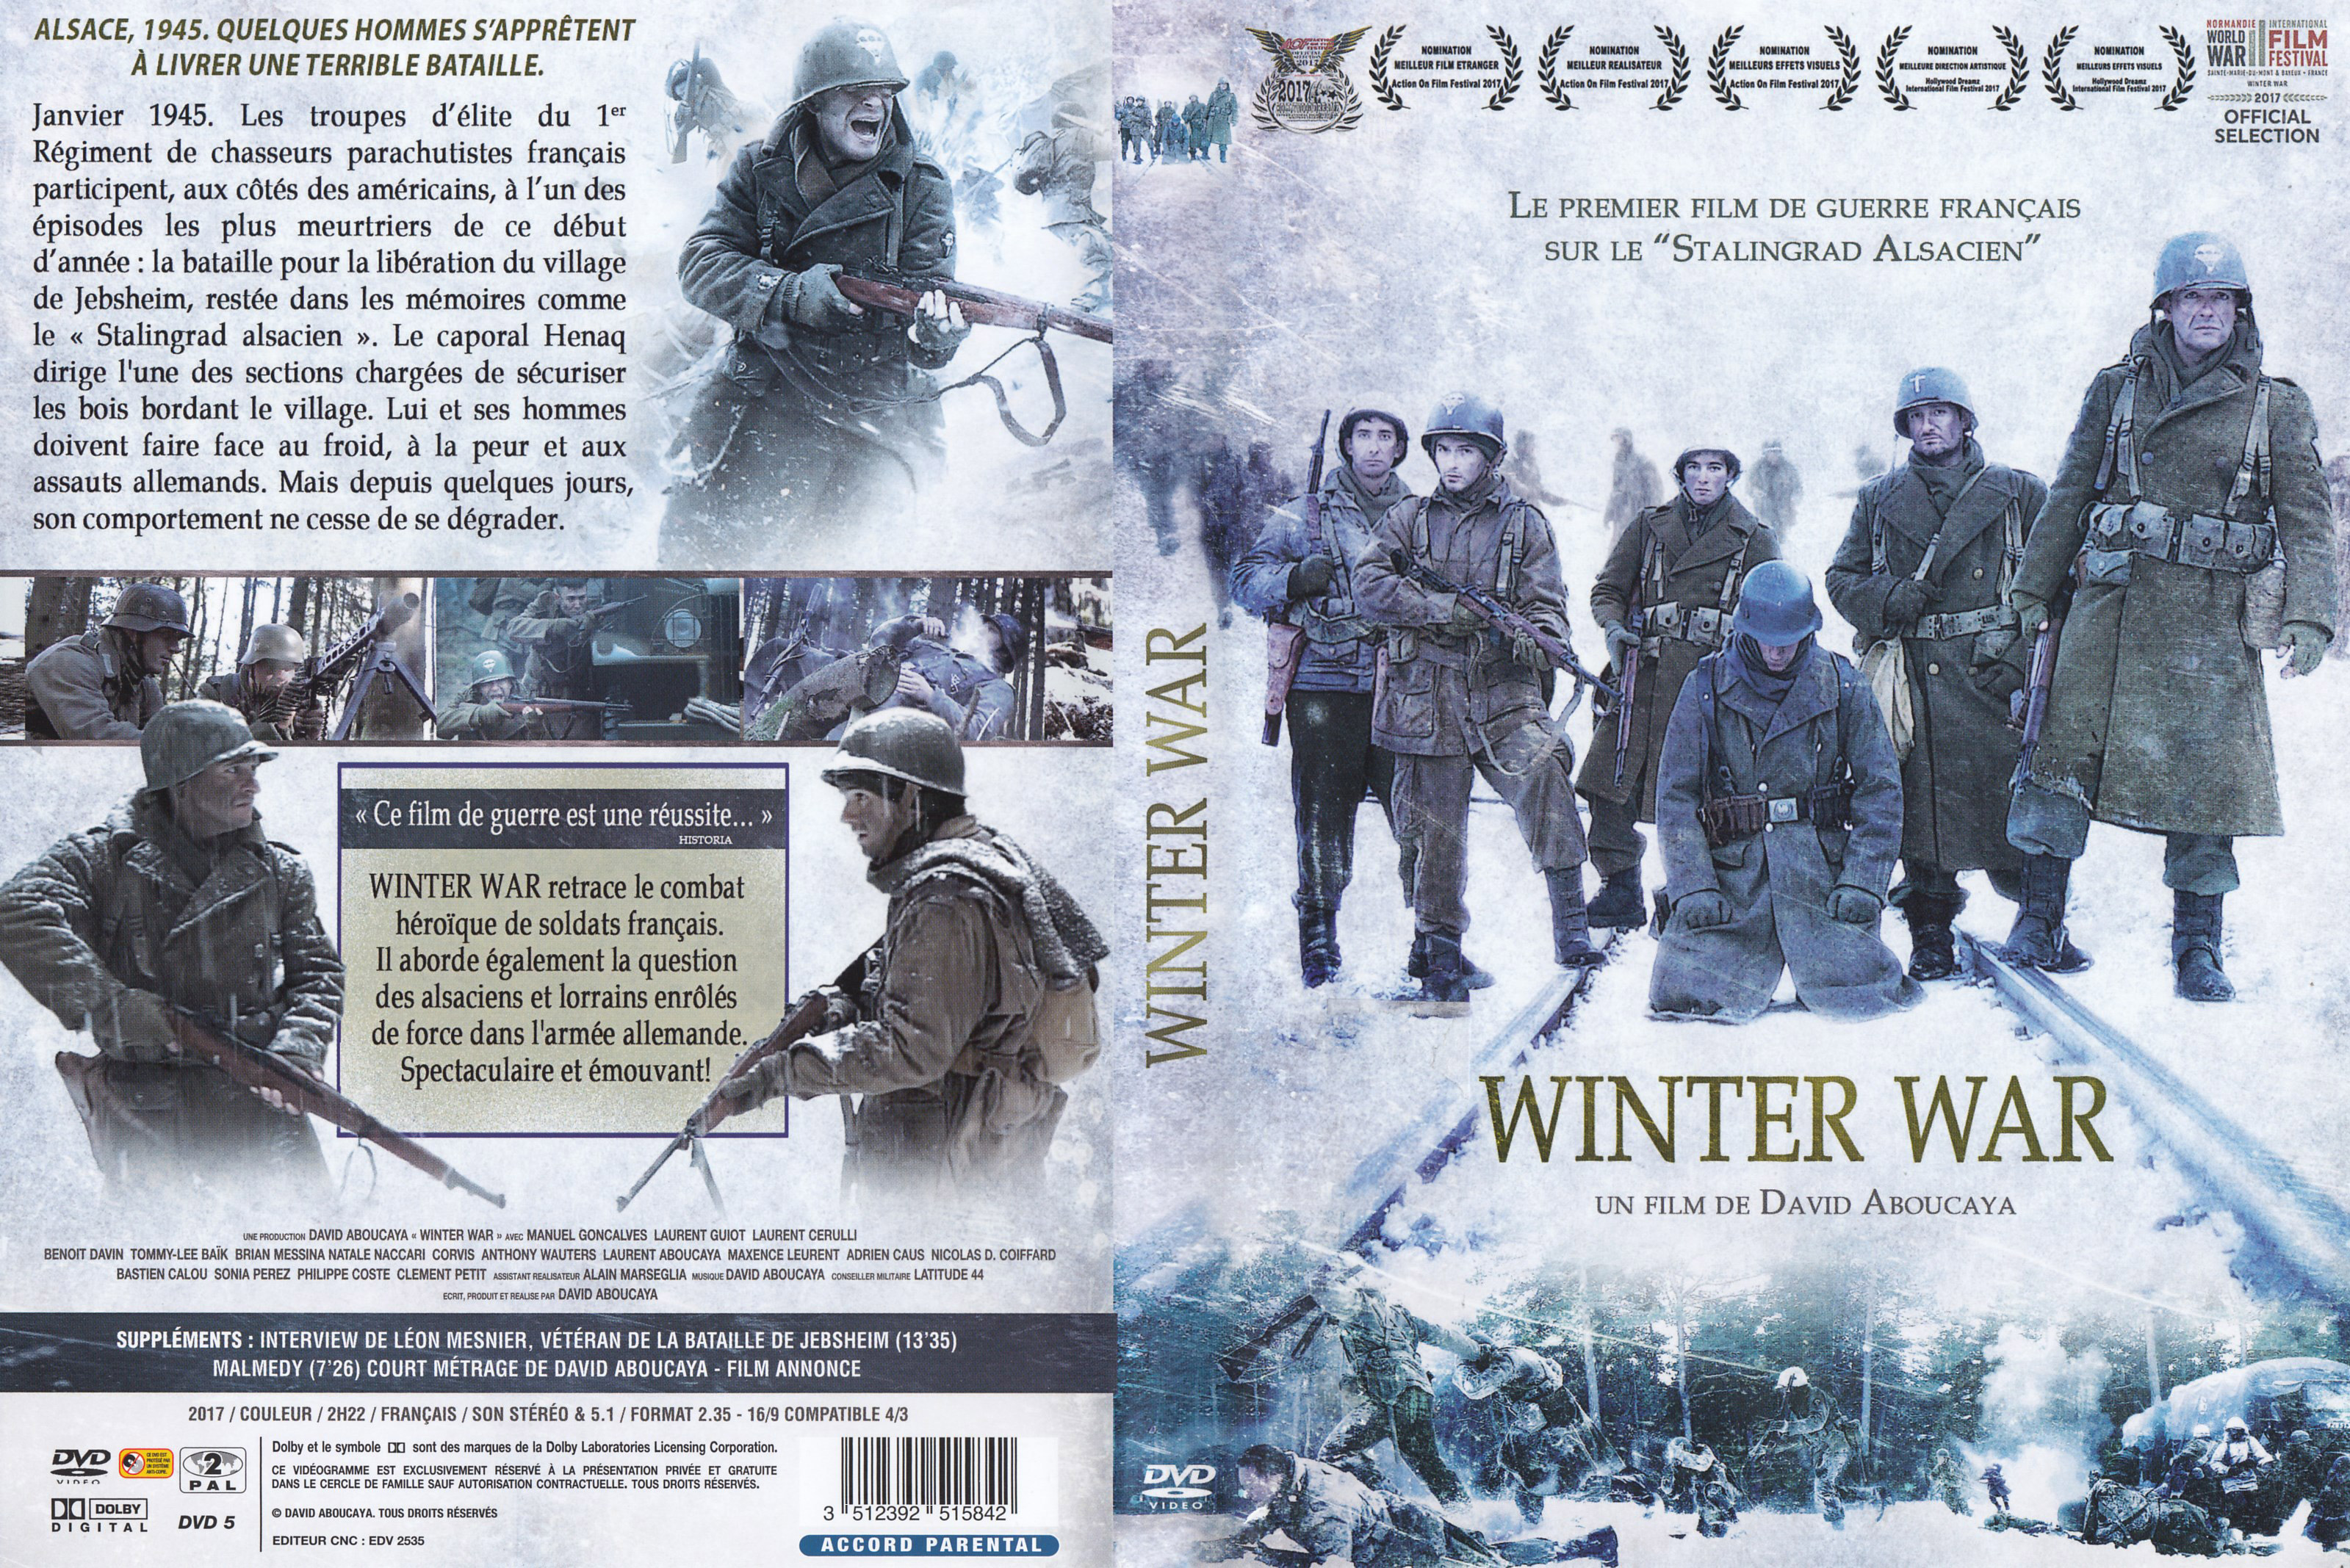 Jaquette DVD Winter war